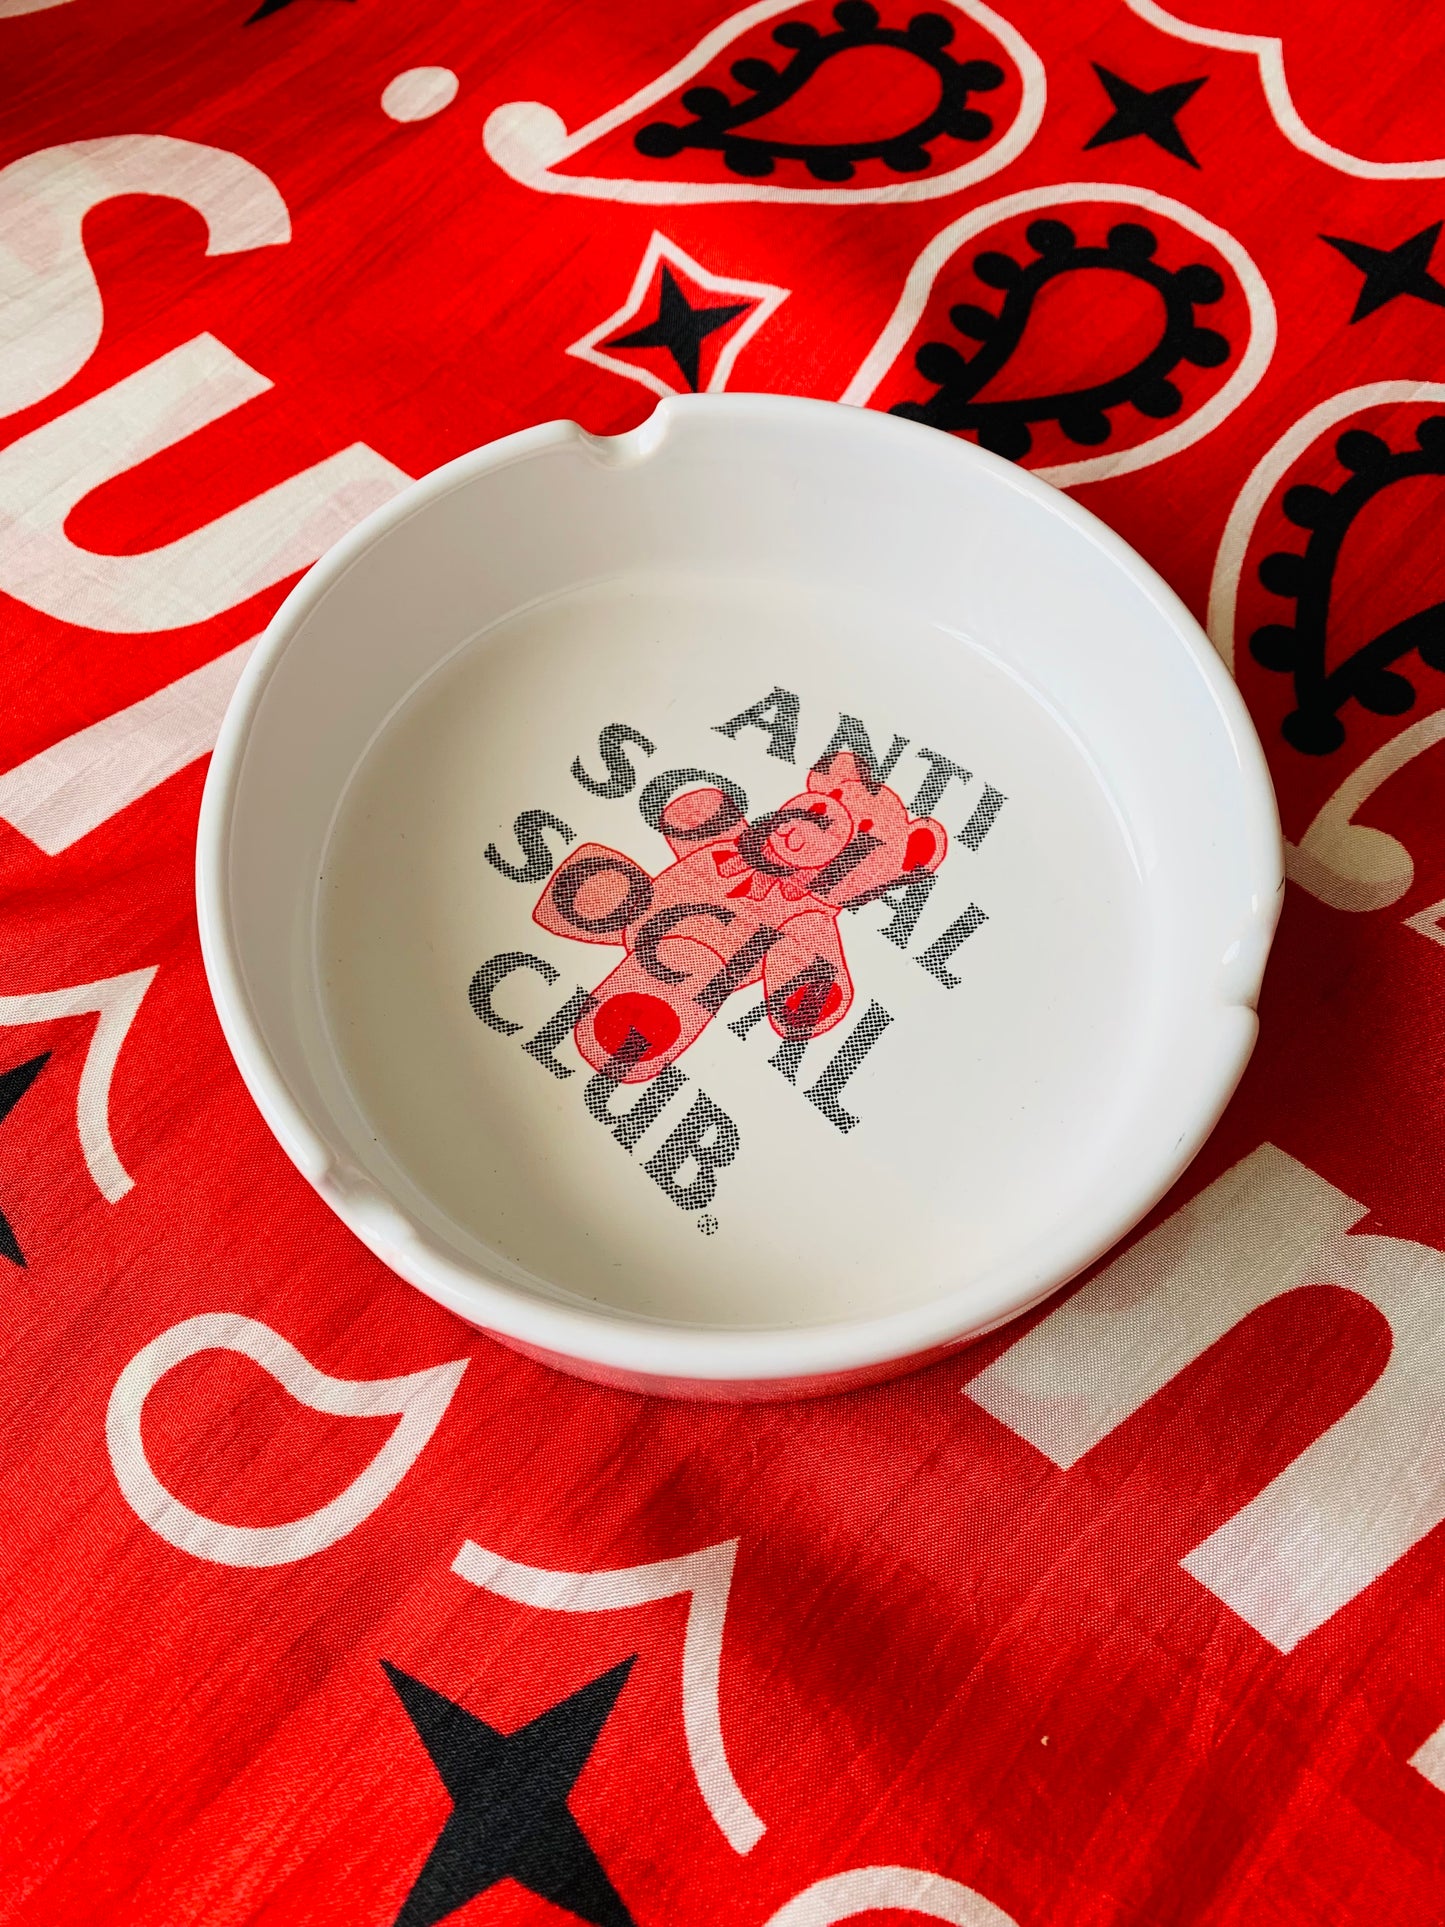 Anti Social Social Club Ashtray